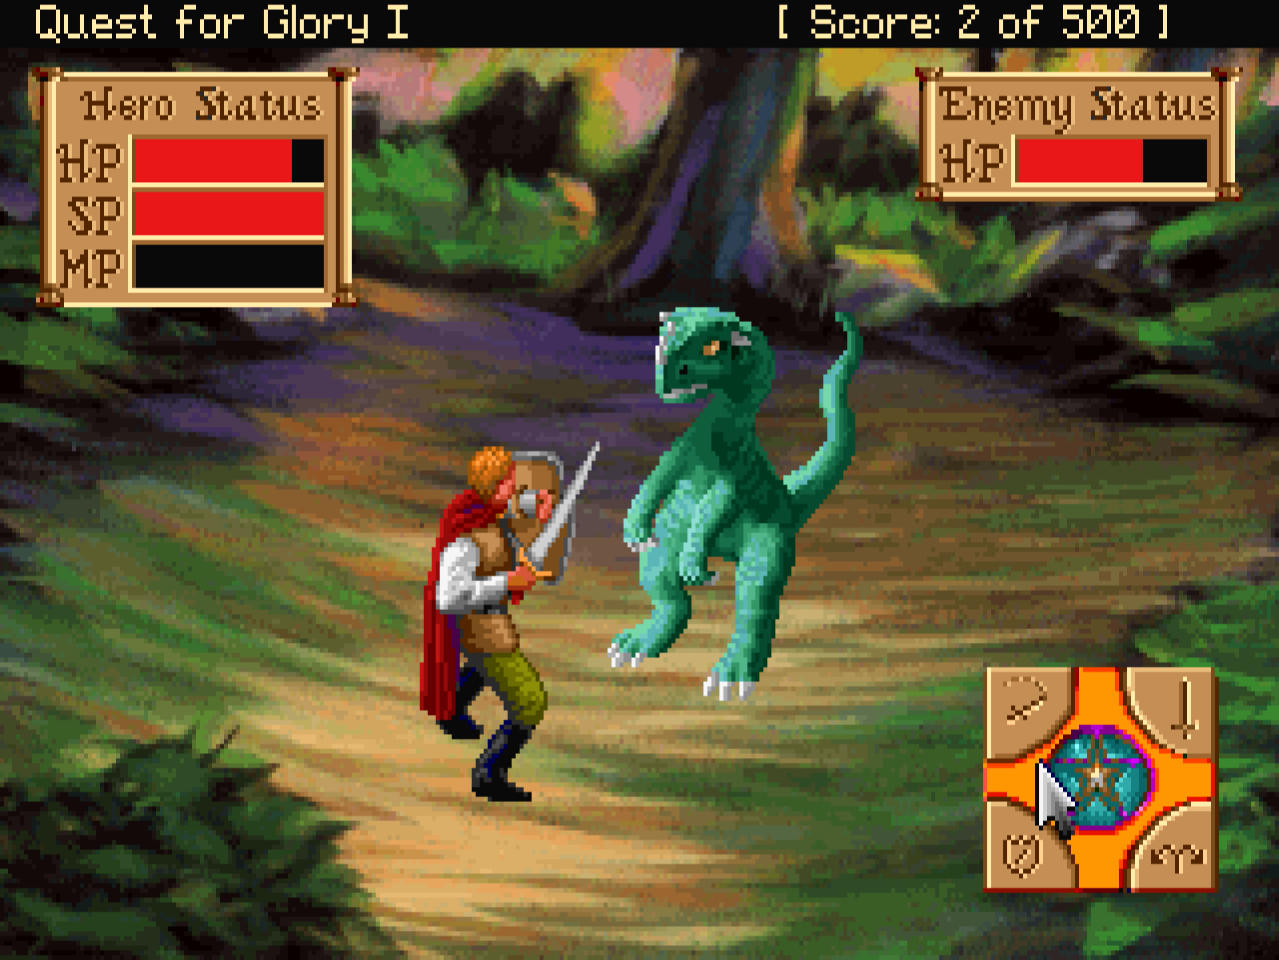 The Hero in combat in the VGA version